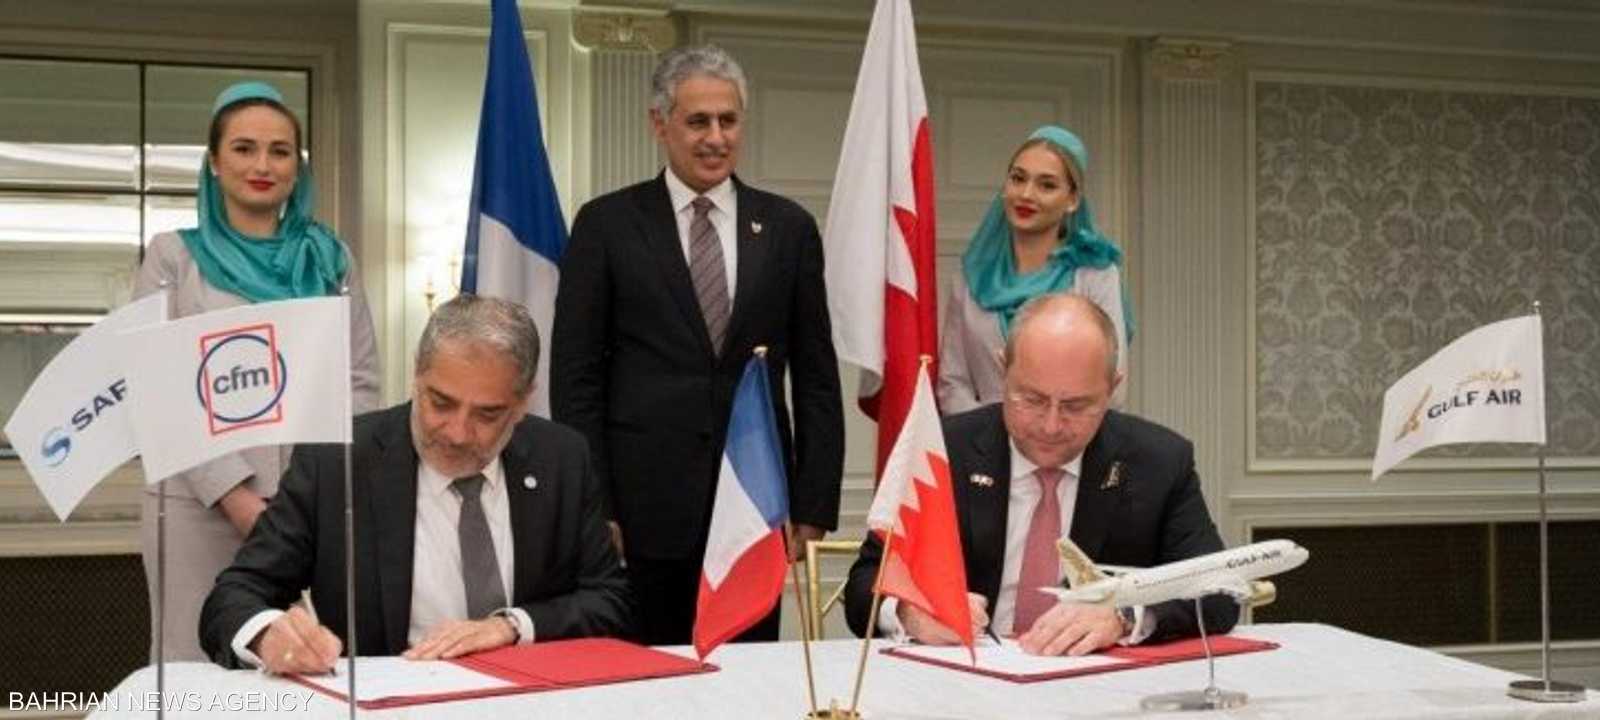 البحرين توقع صفقات بملياري دولار مع فرنسا